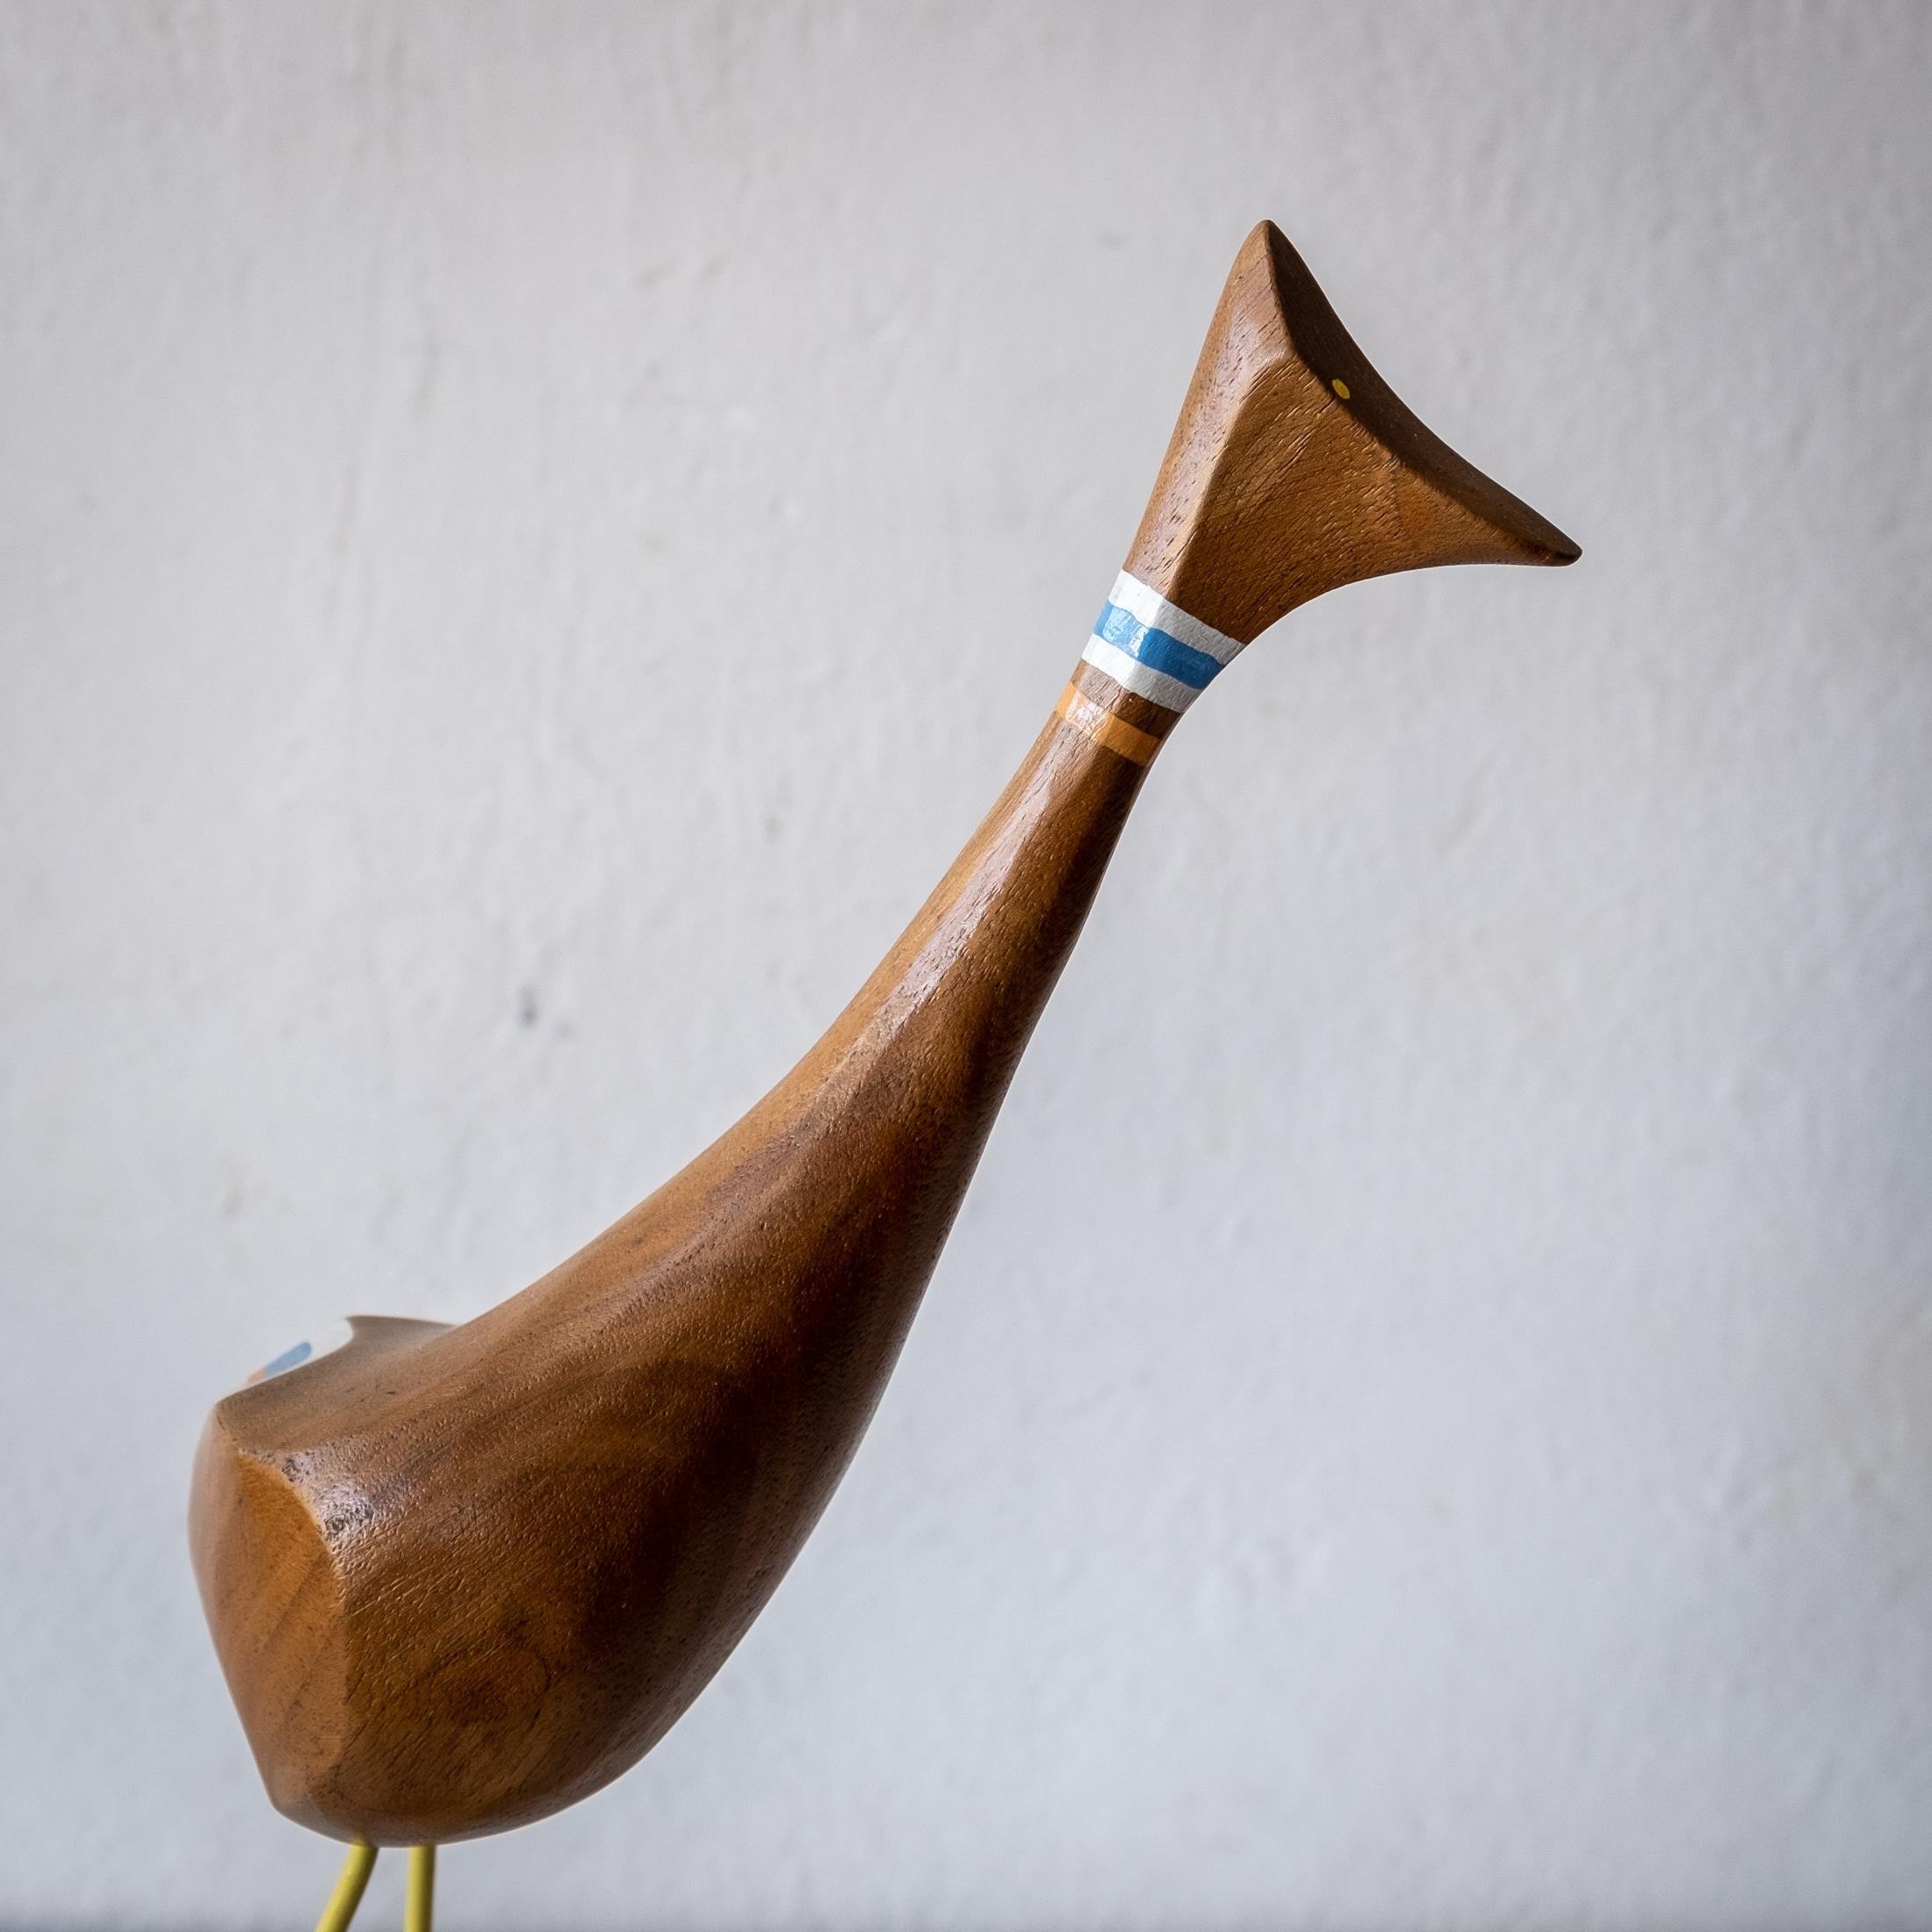 abstract bird sculpture